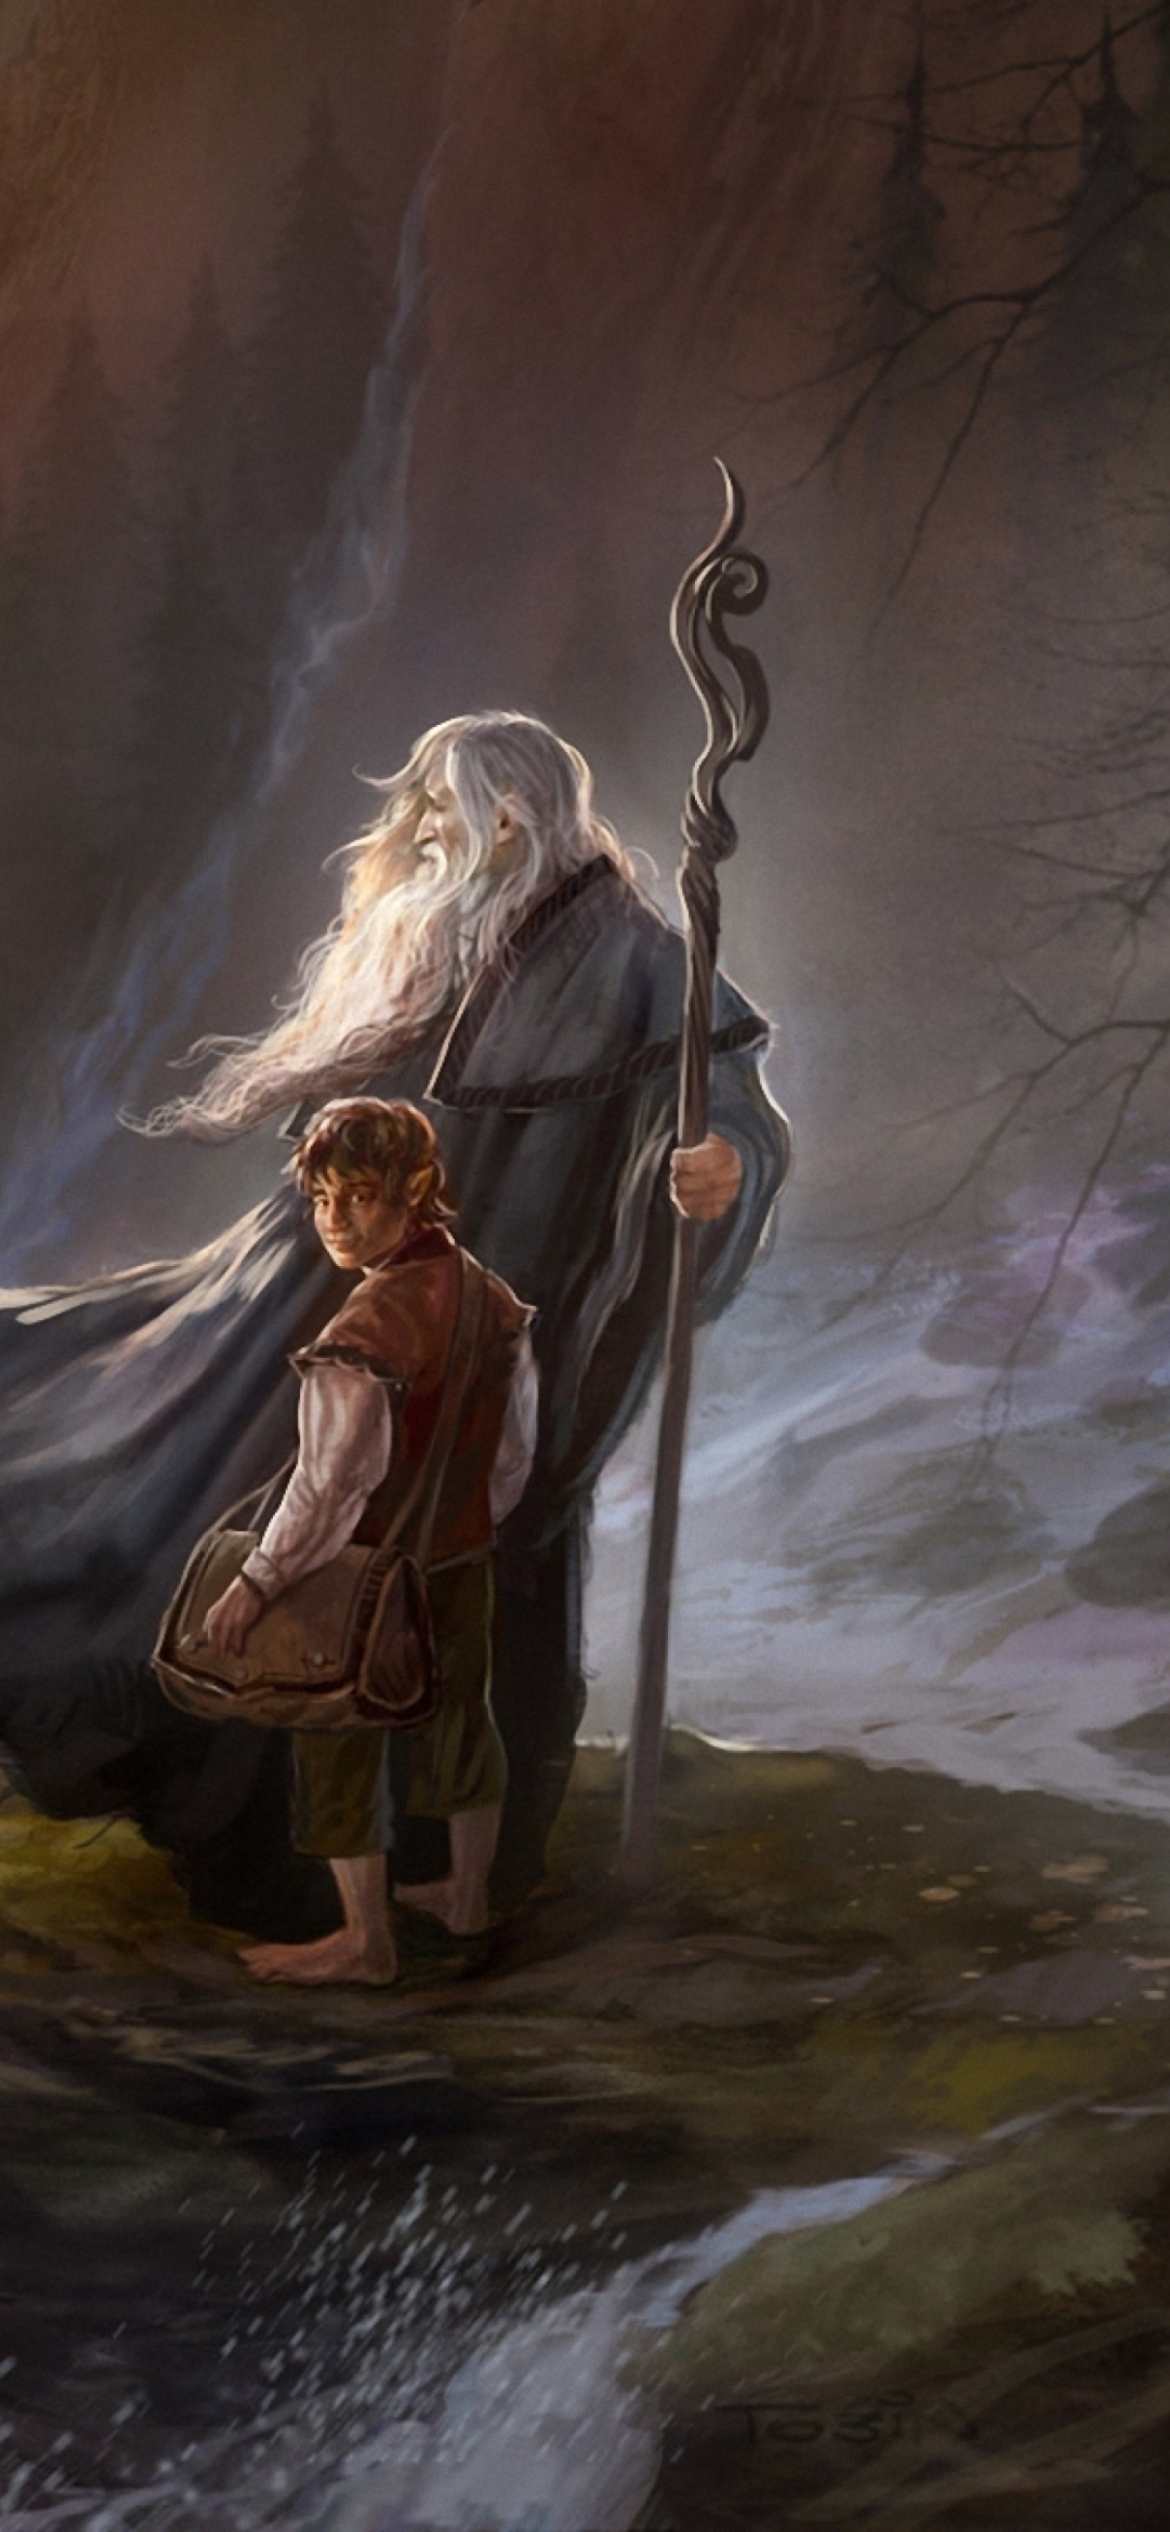 The Hobbit An Unexpected Journey - Gandalf wallpaper 1170x2532